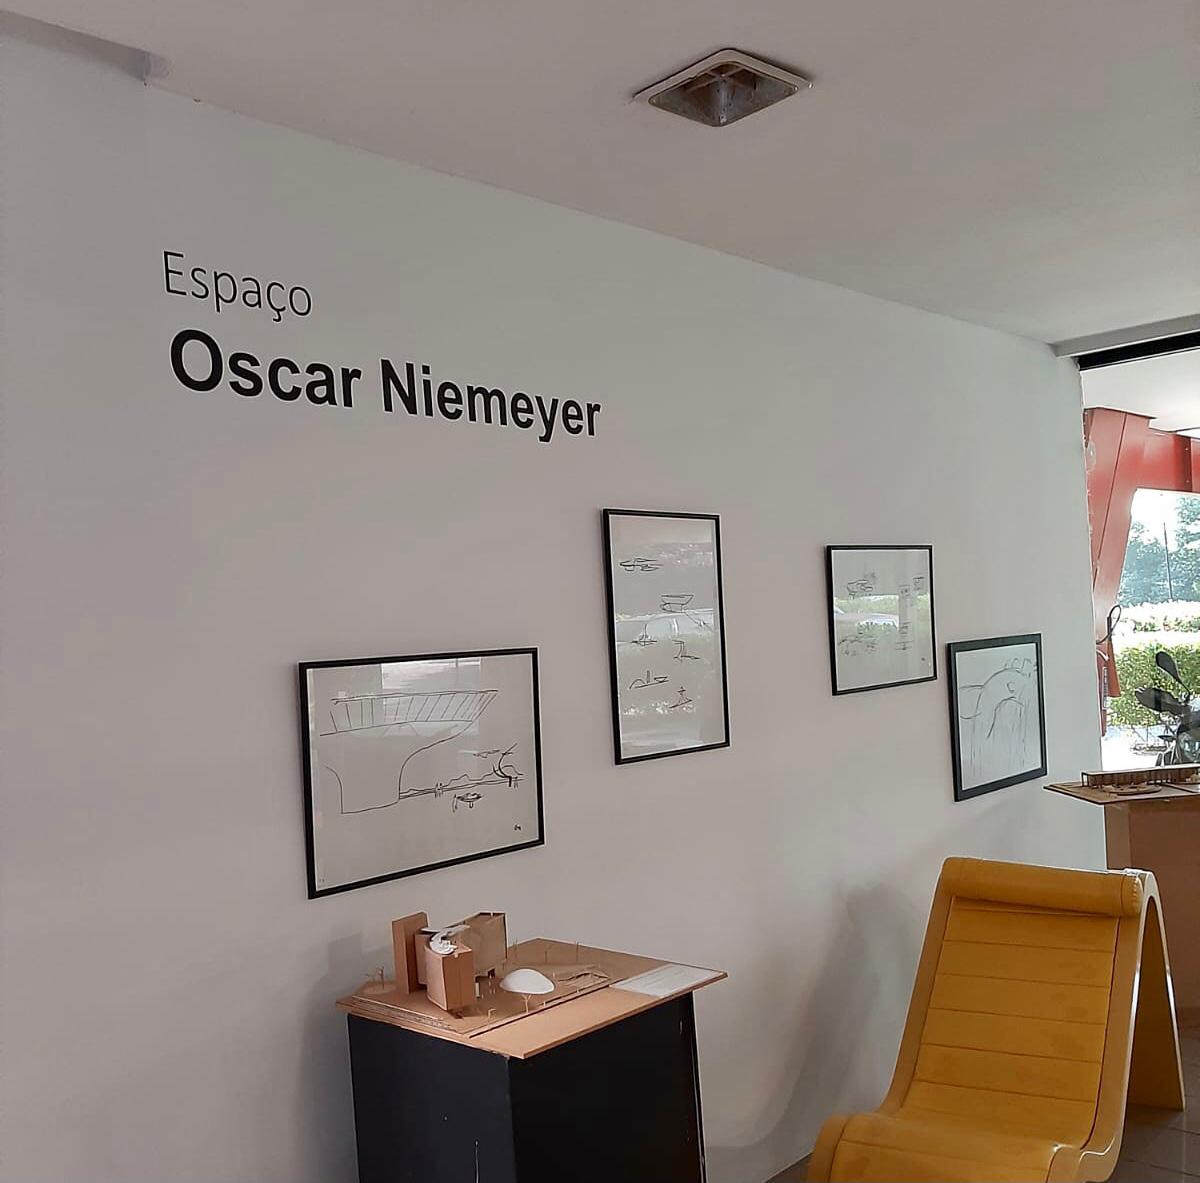 parede branca, tres quadros pequenos com desenhos de Oscar Niemeyer. ao fundo aplacapequena com os dizeres "espaço Niemeyer"